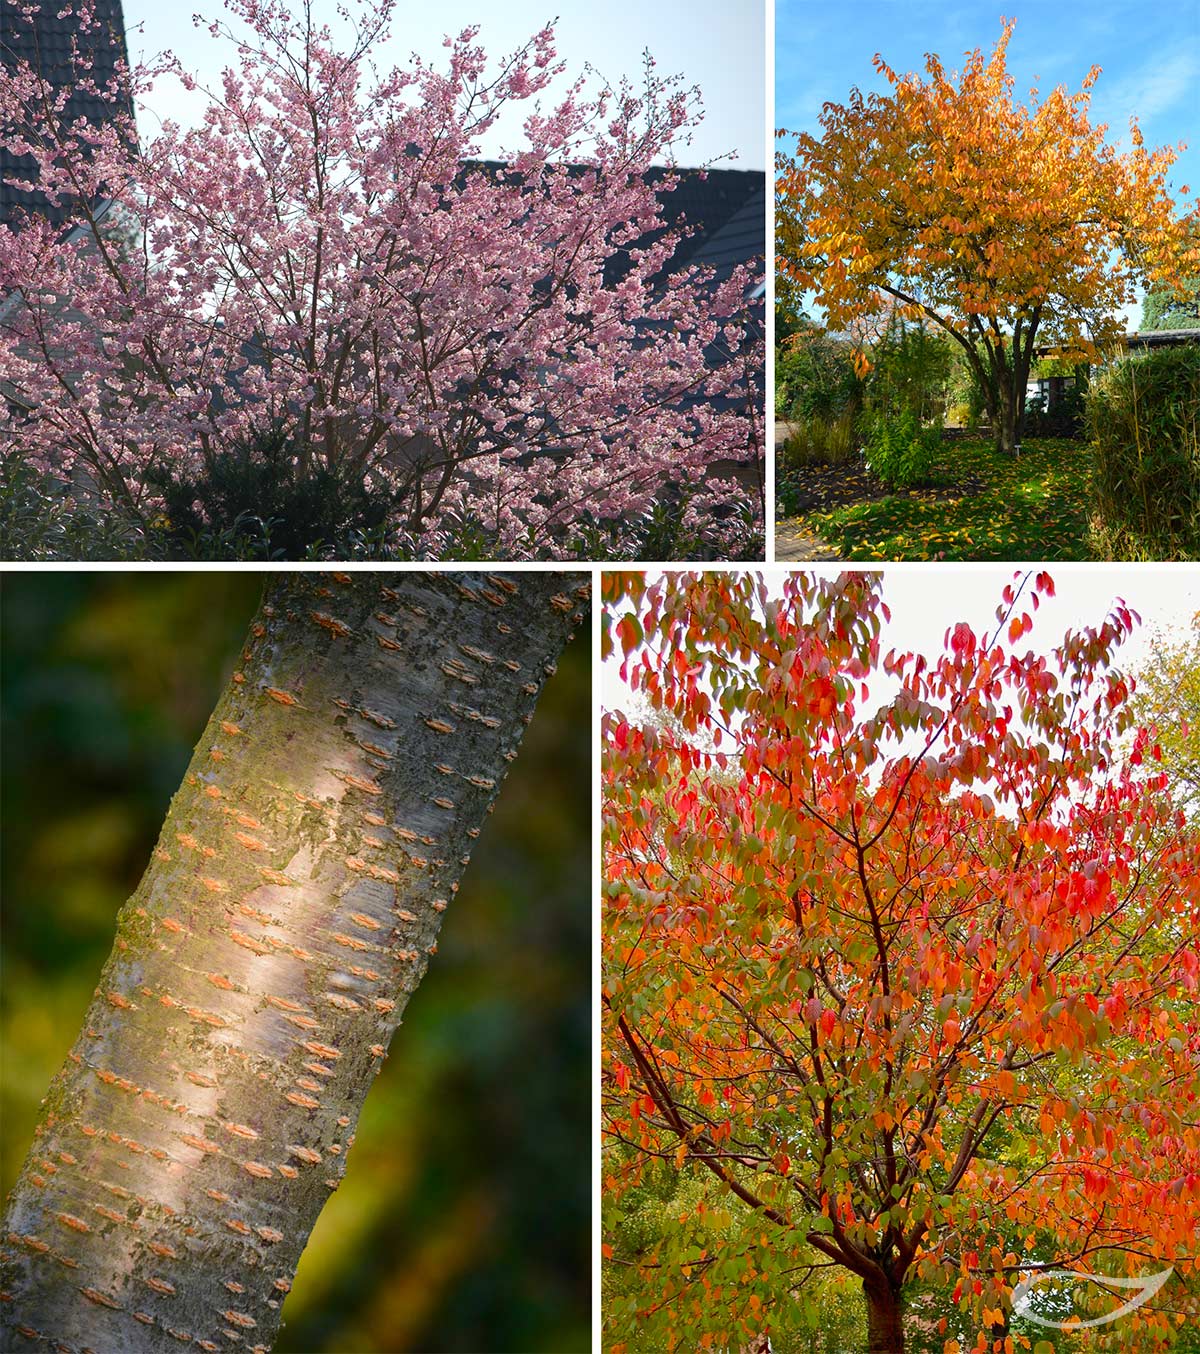 4-Jahreszeiten Baum Prunus sargentii Blüte, Herbstfärbung, Rinde